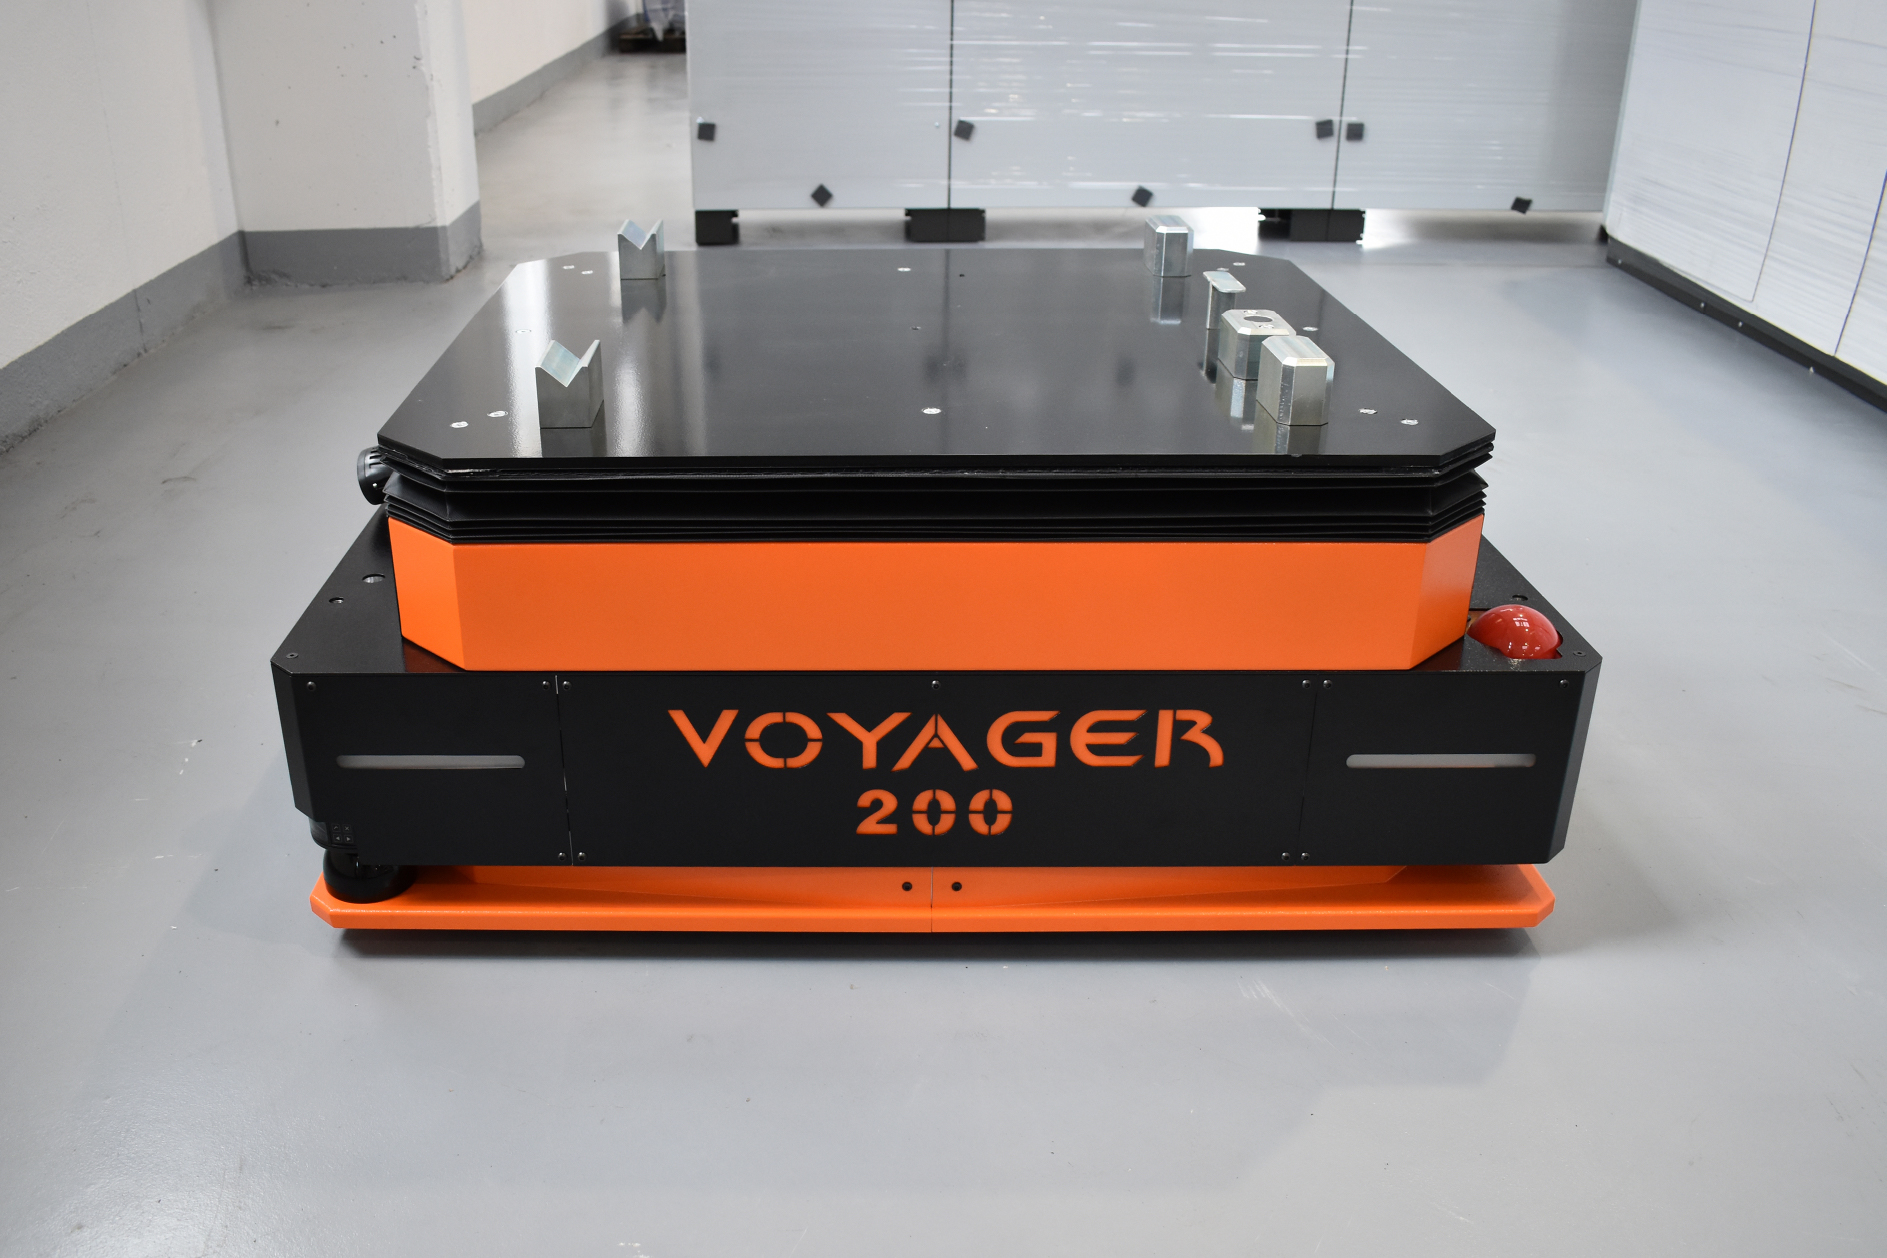 Batterie al litio Archimede Energia per la flotta AGV “VOYAGER 200” di Polytec